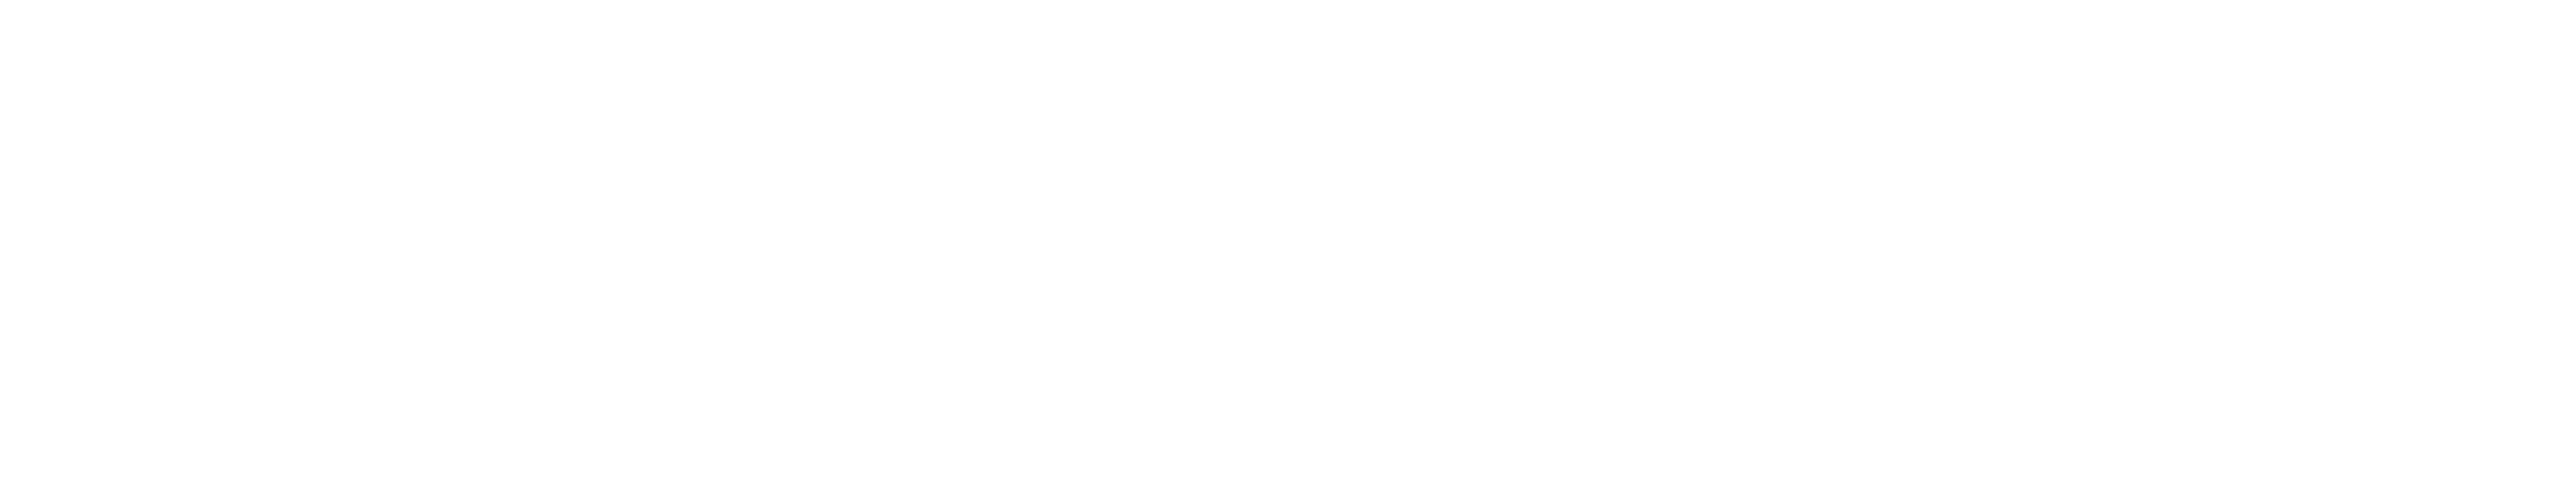 Logo Initiative canadienne pour des collectivités en santé